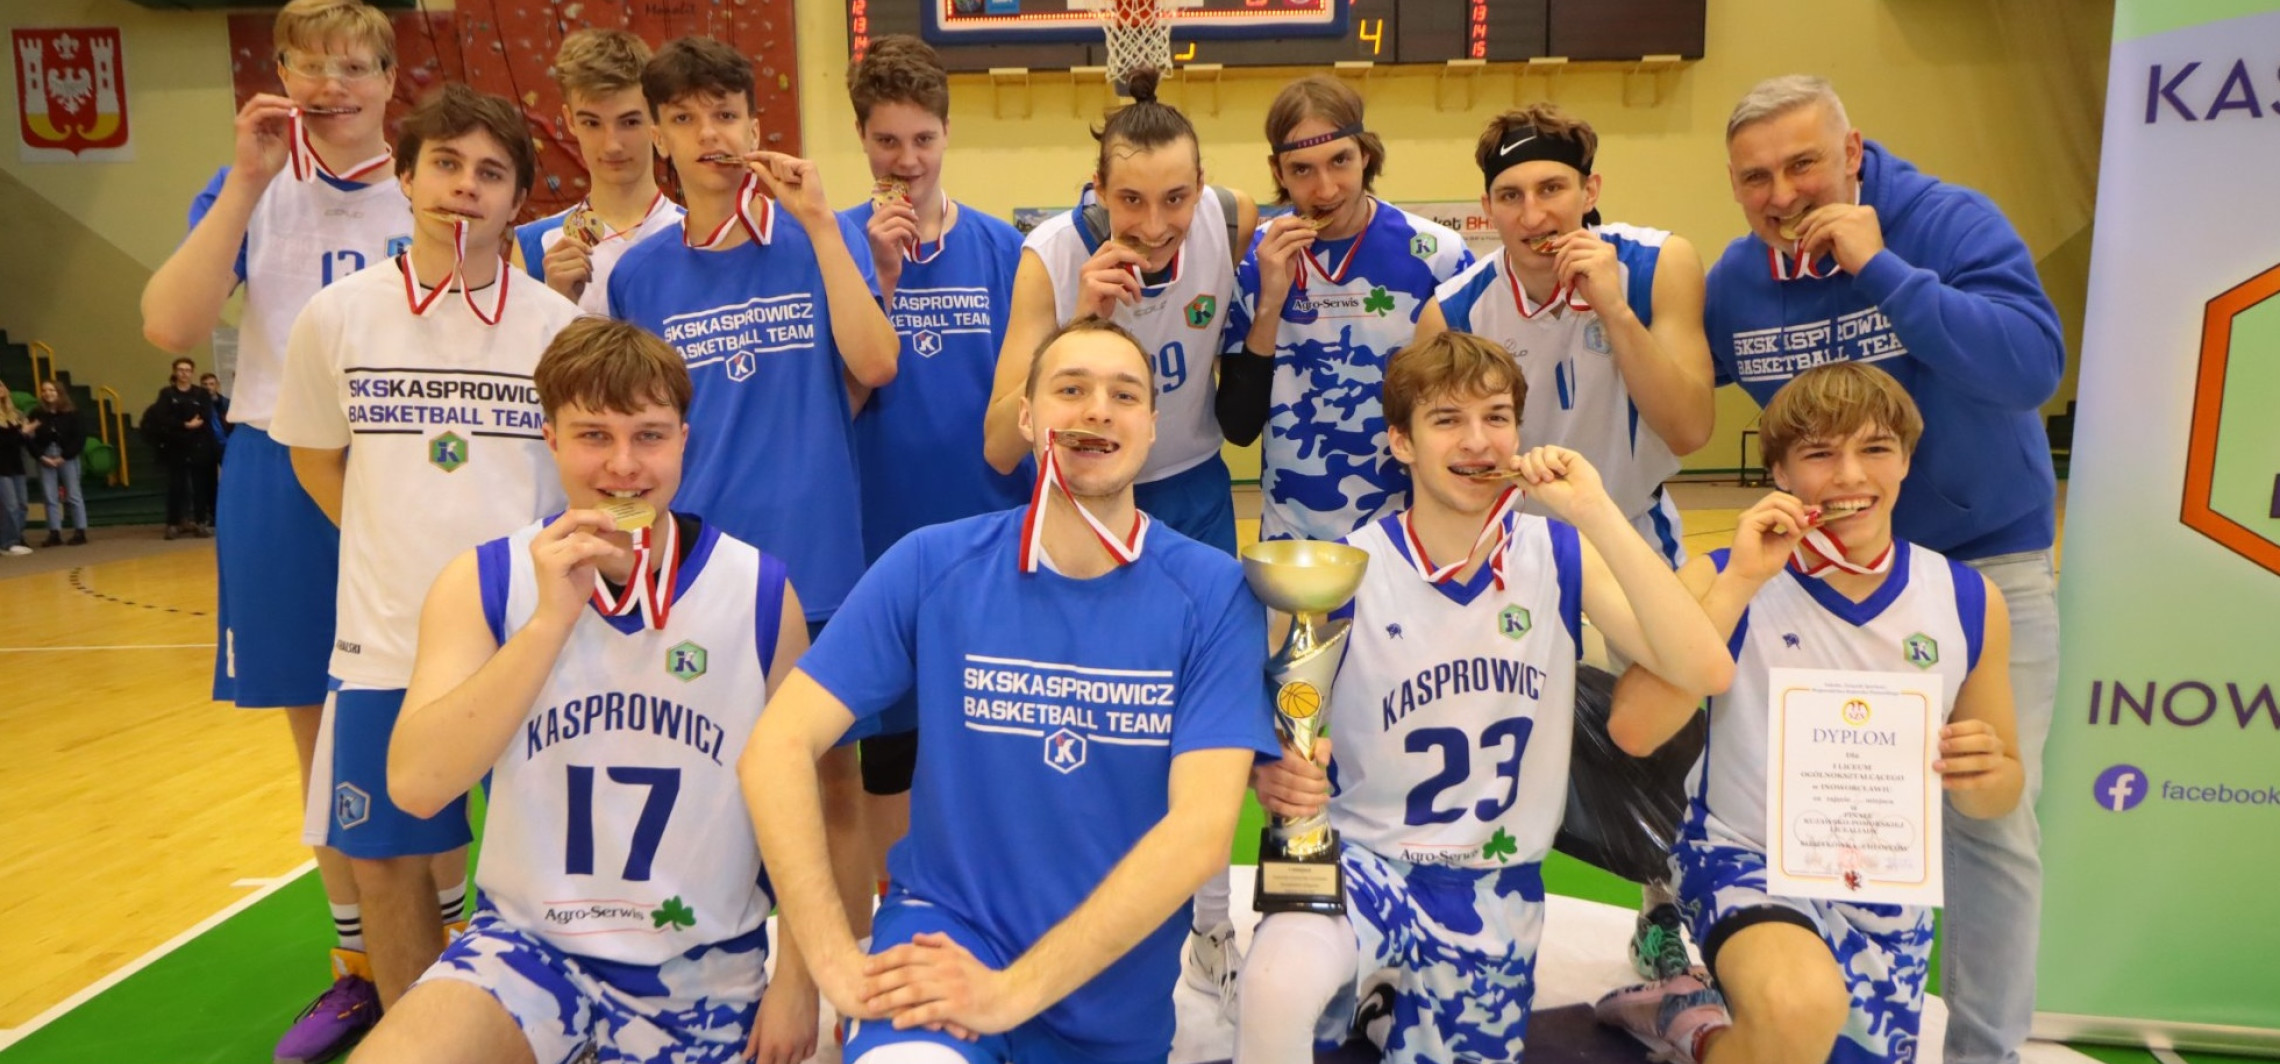 Inowrocław - Koszykarze Kasprowicza zagrają w mistrzostwach Polski